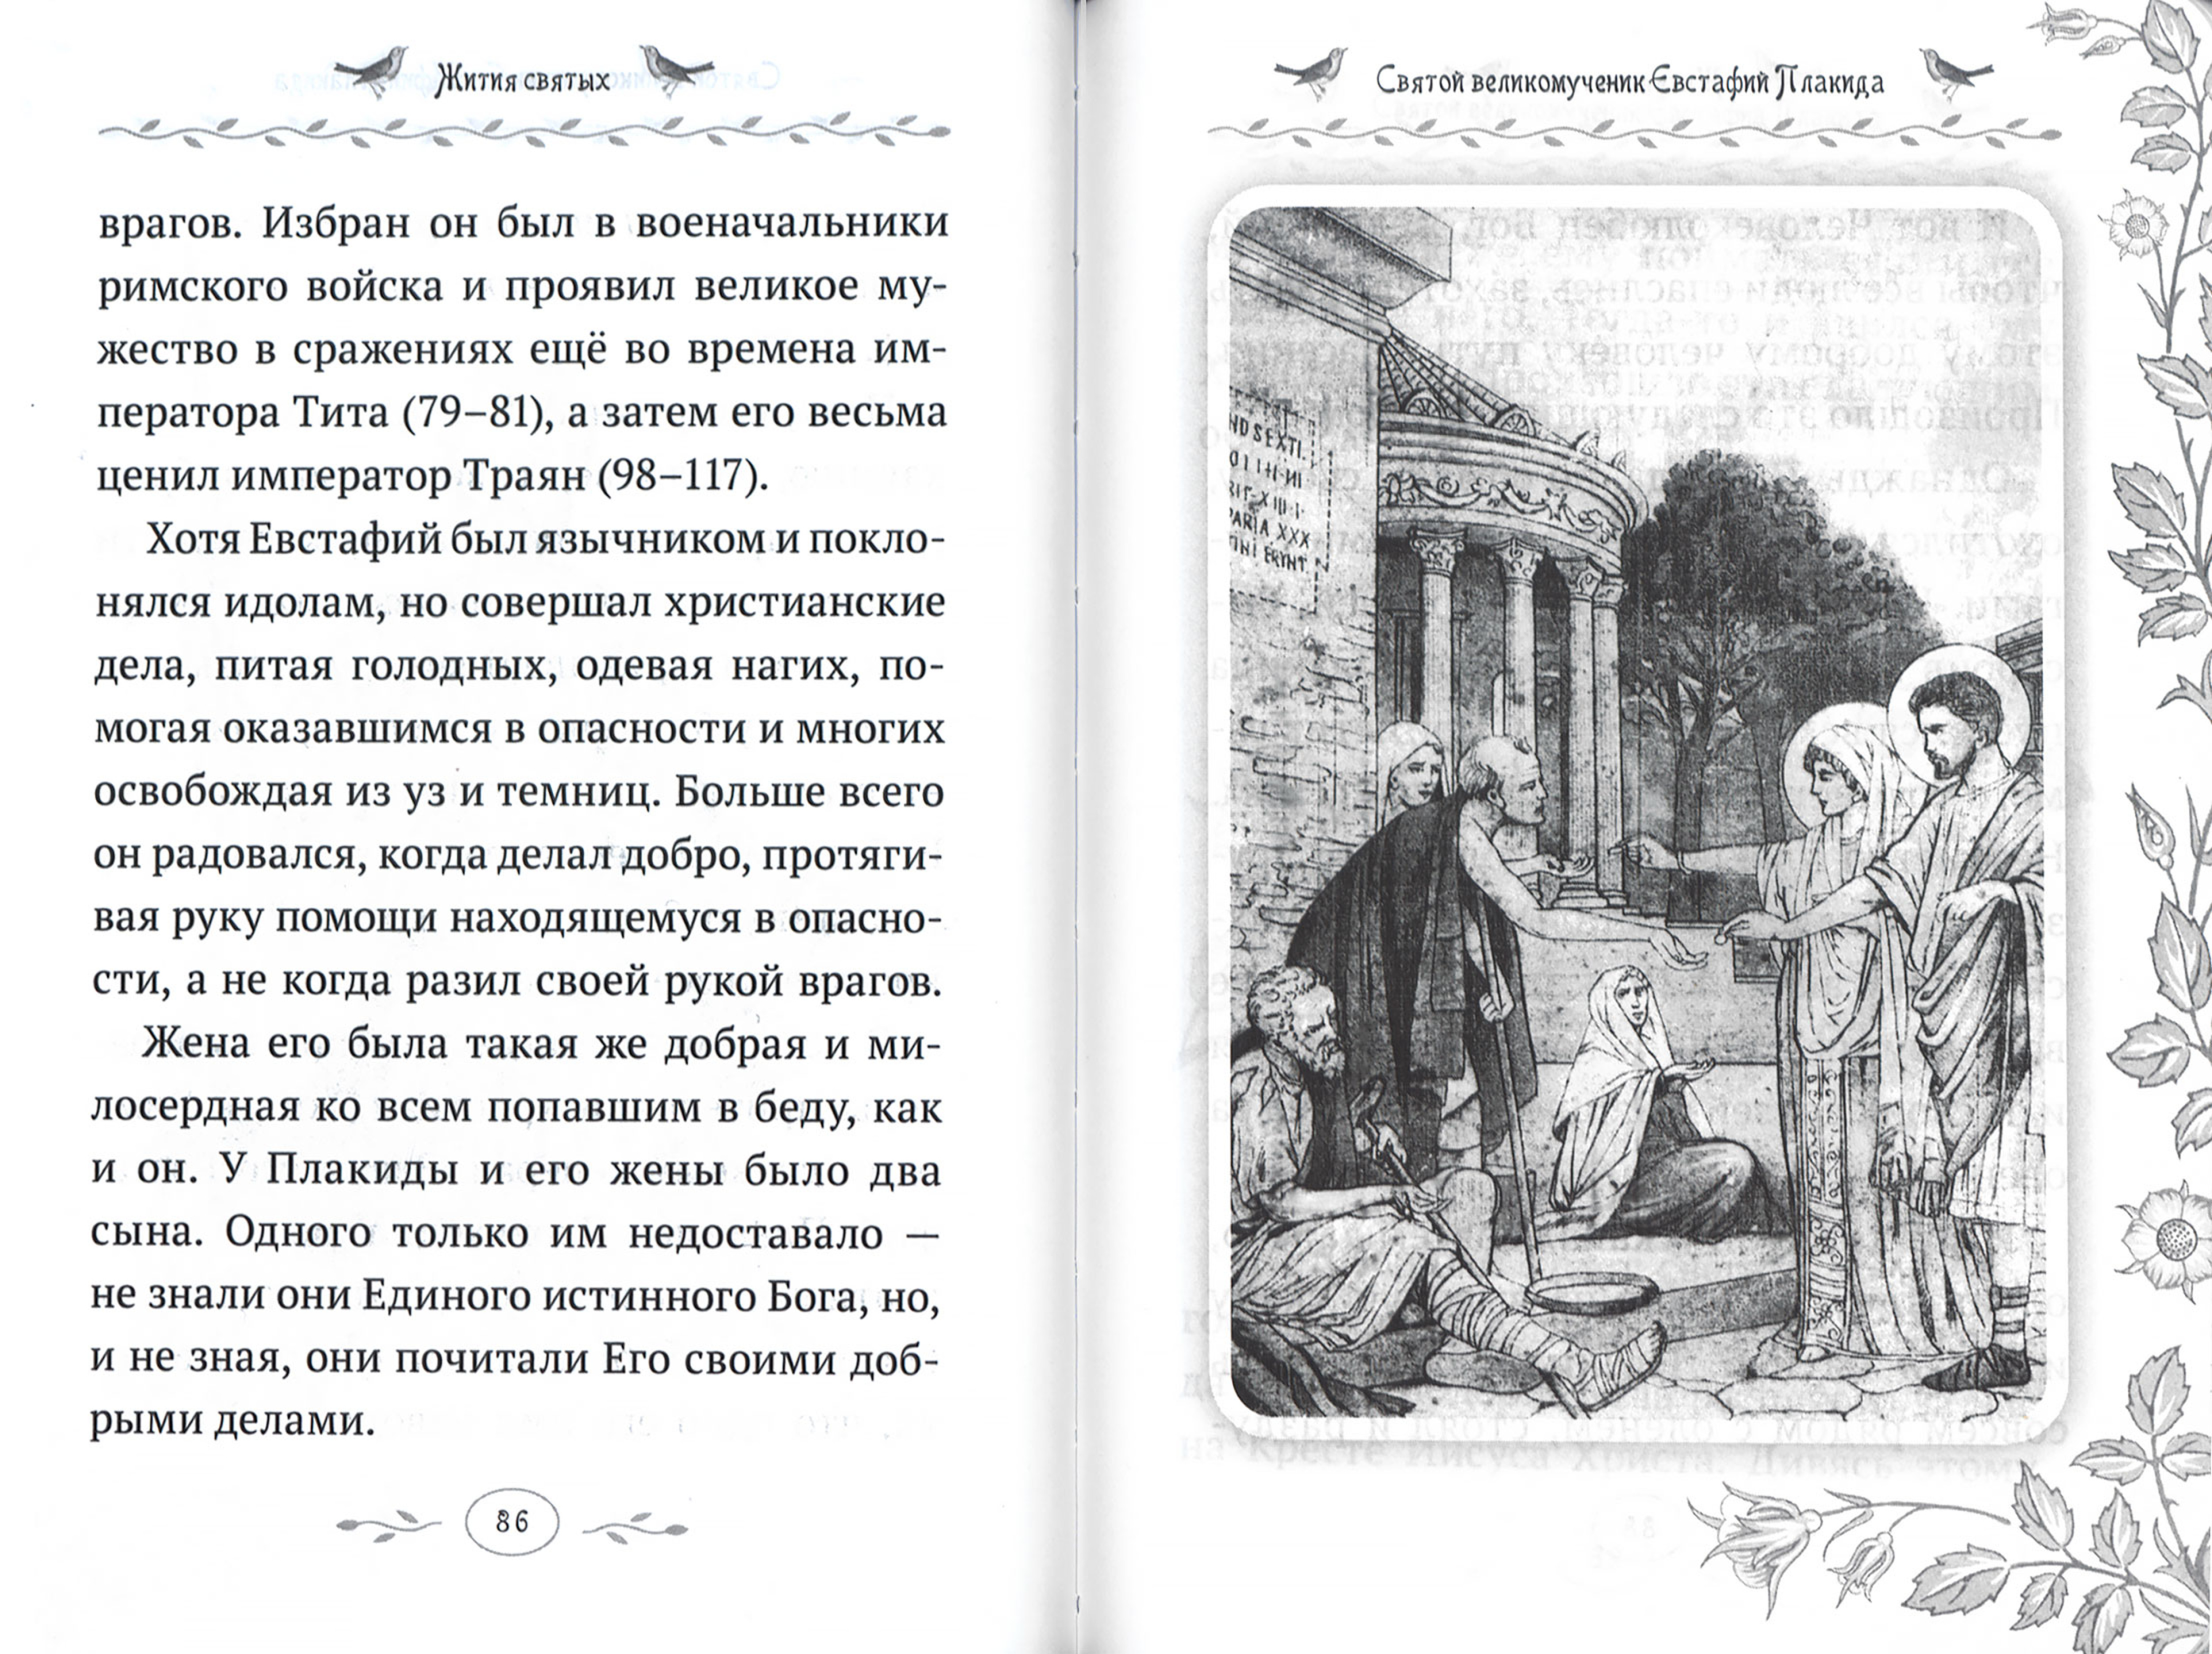 Жития святых. Истории румынского старца для детей и взрослых